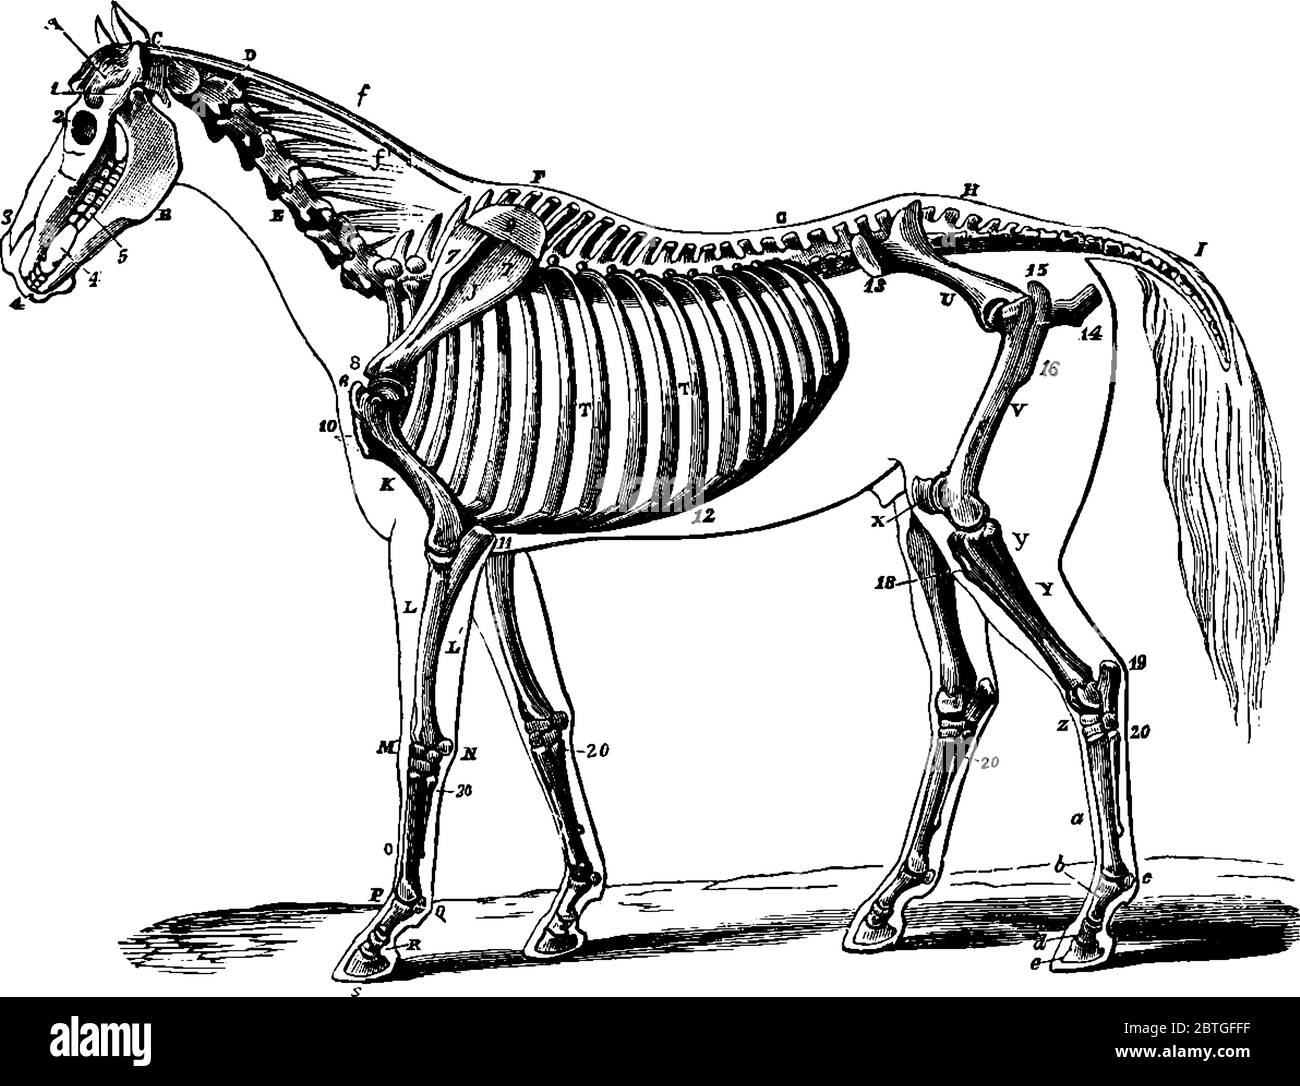 Das Skelett eines Pferdes, das seine Beziehung zur Kontur des Tieres zeigt, seitlich betrachtet, Vintage-Strichzeichnung oder Gravurzeichnung. Stock Vektor